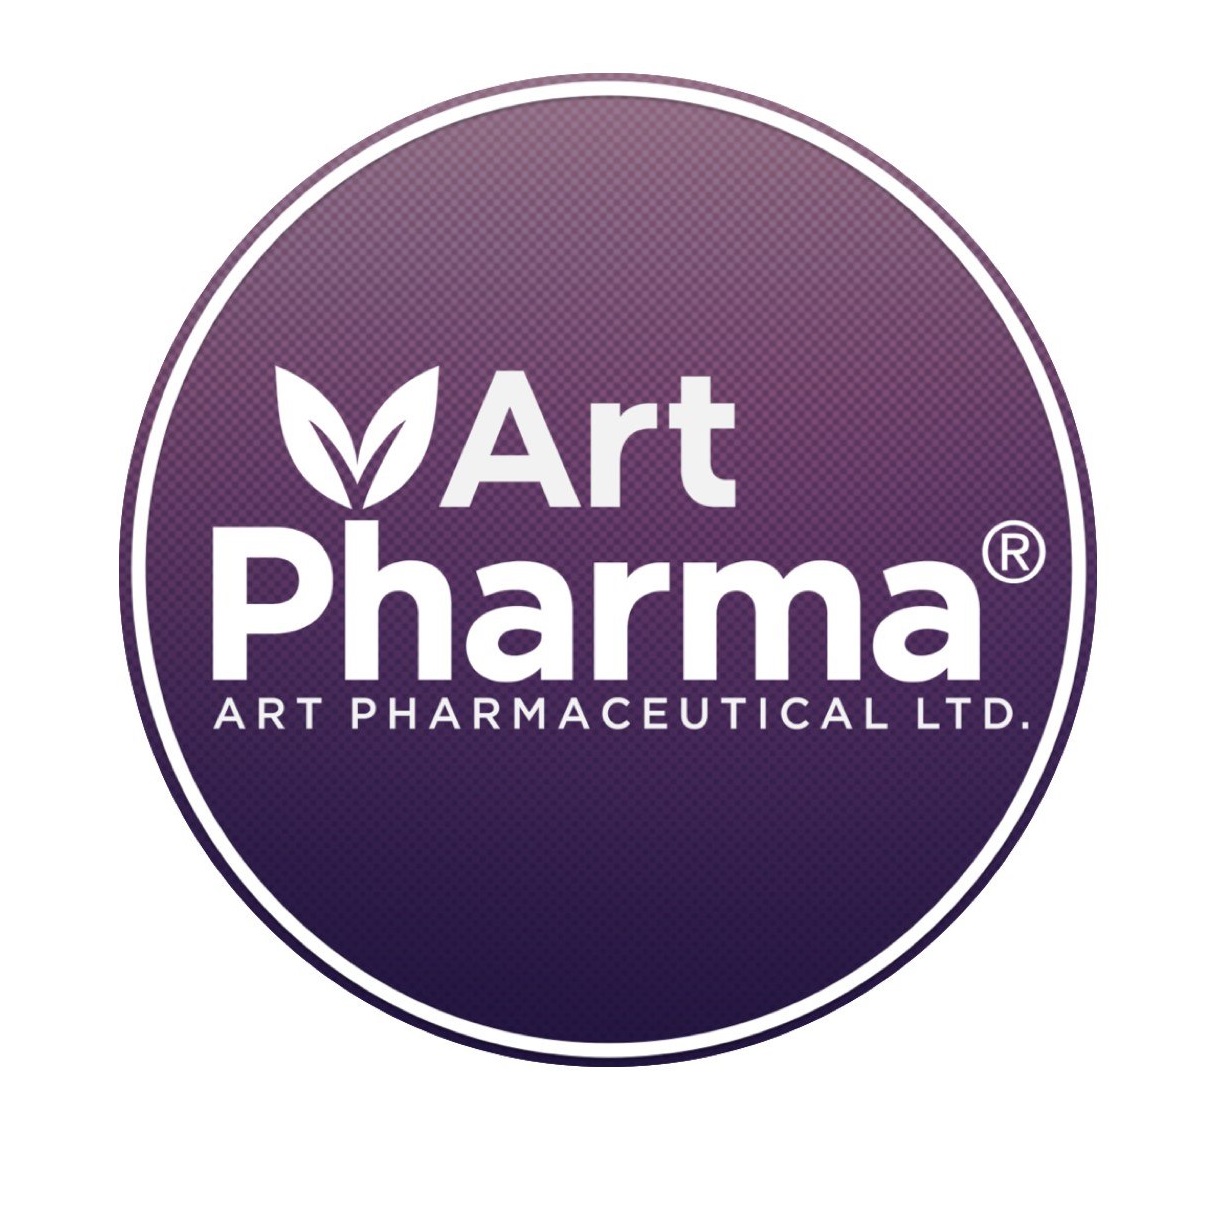 Art pharma